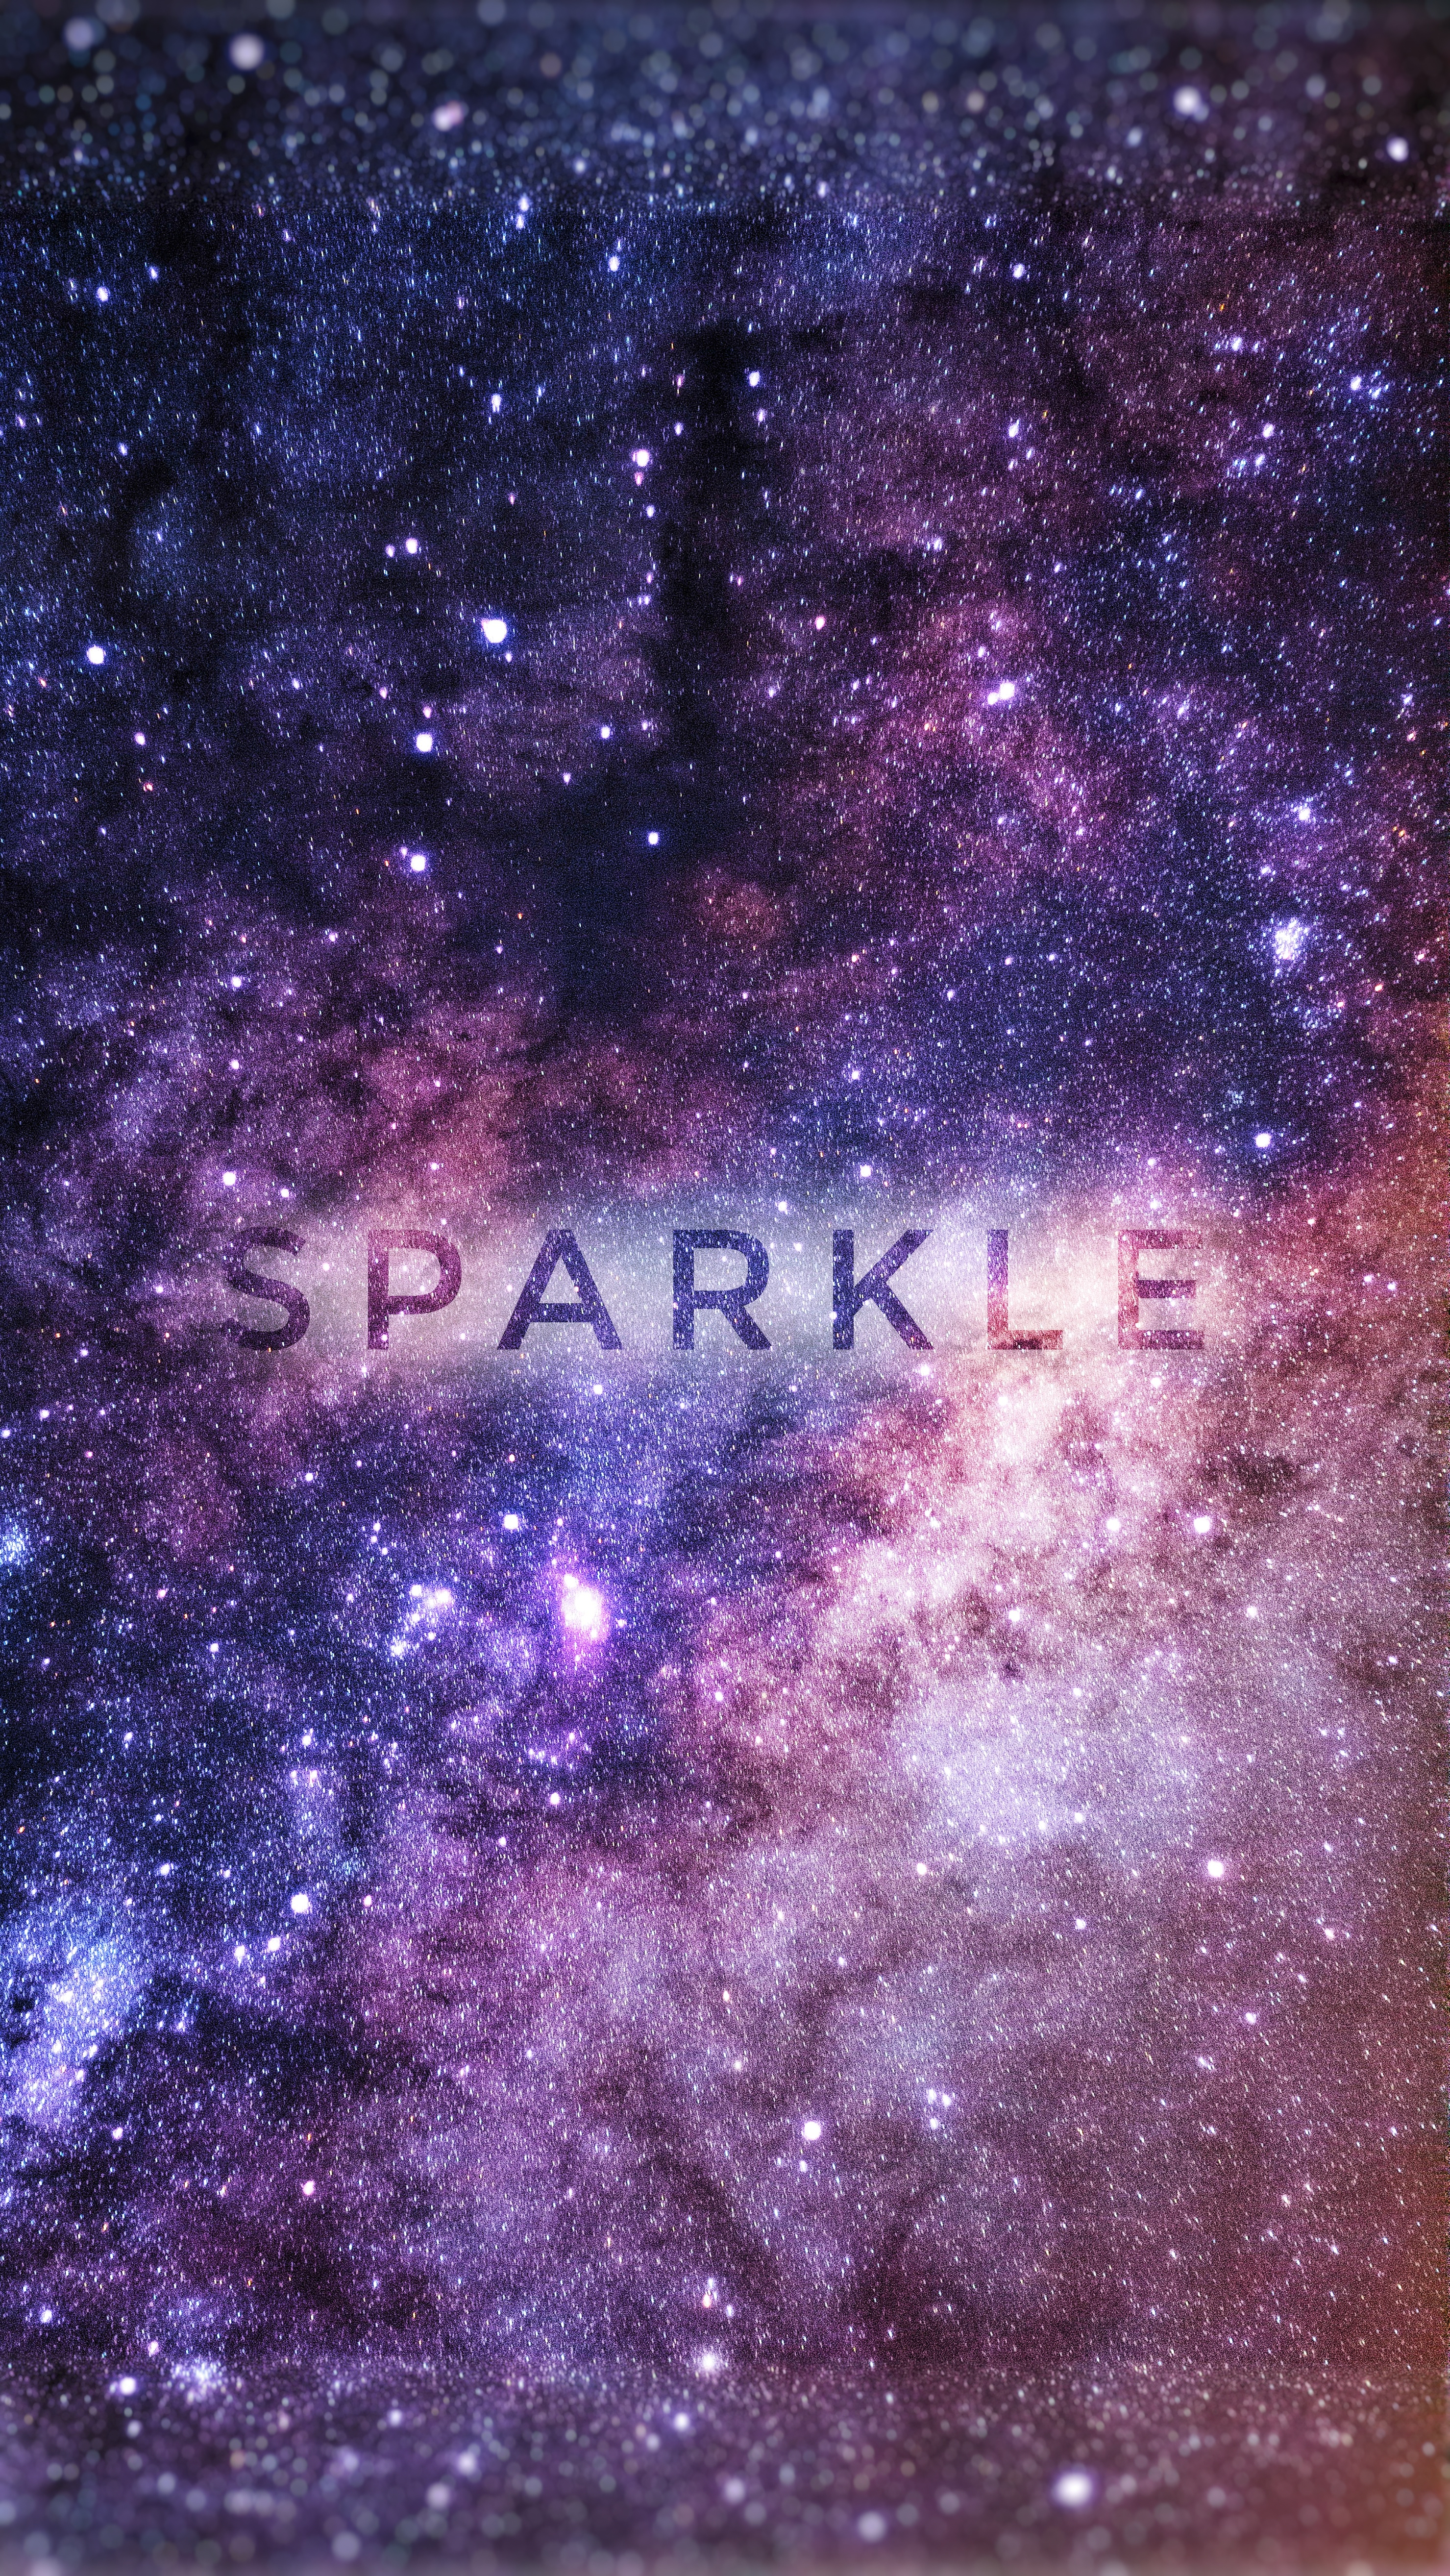 Sparkle by kiran_9614